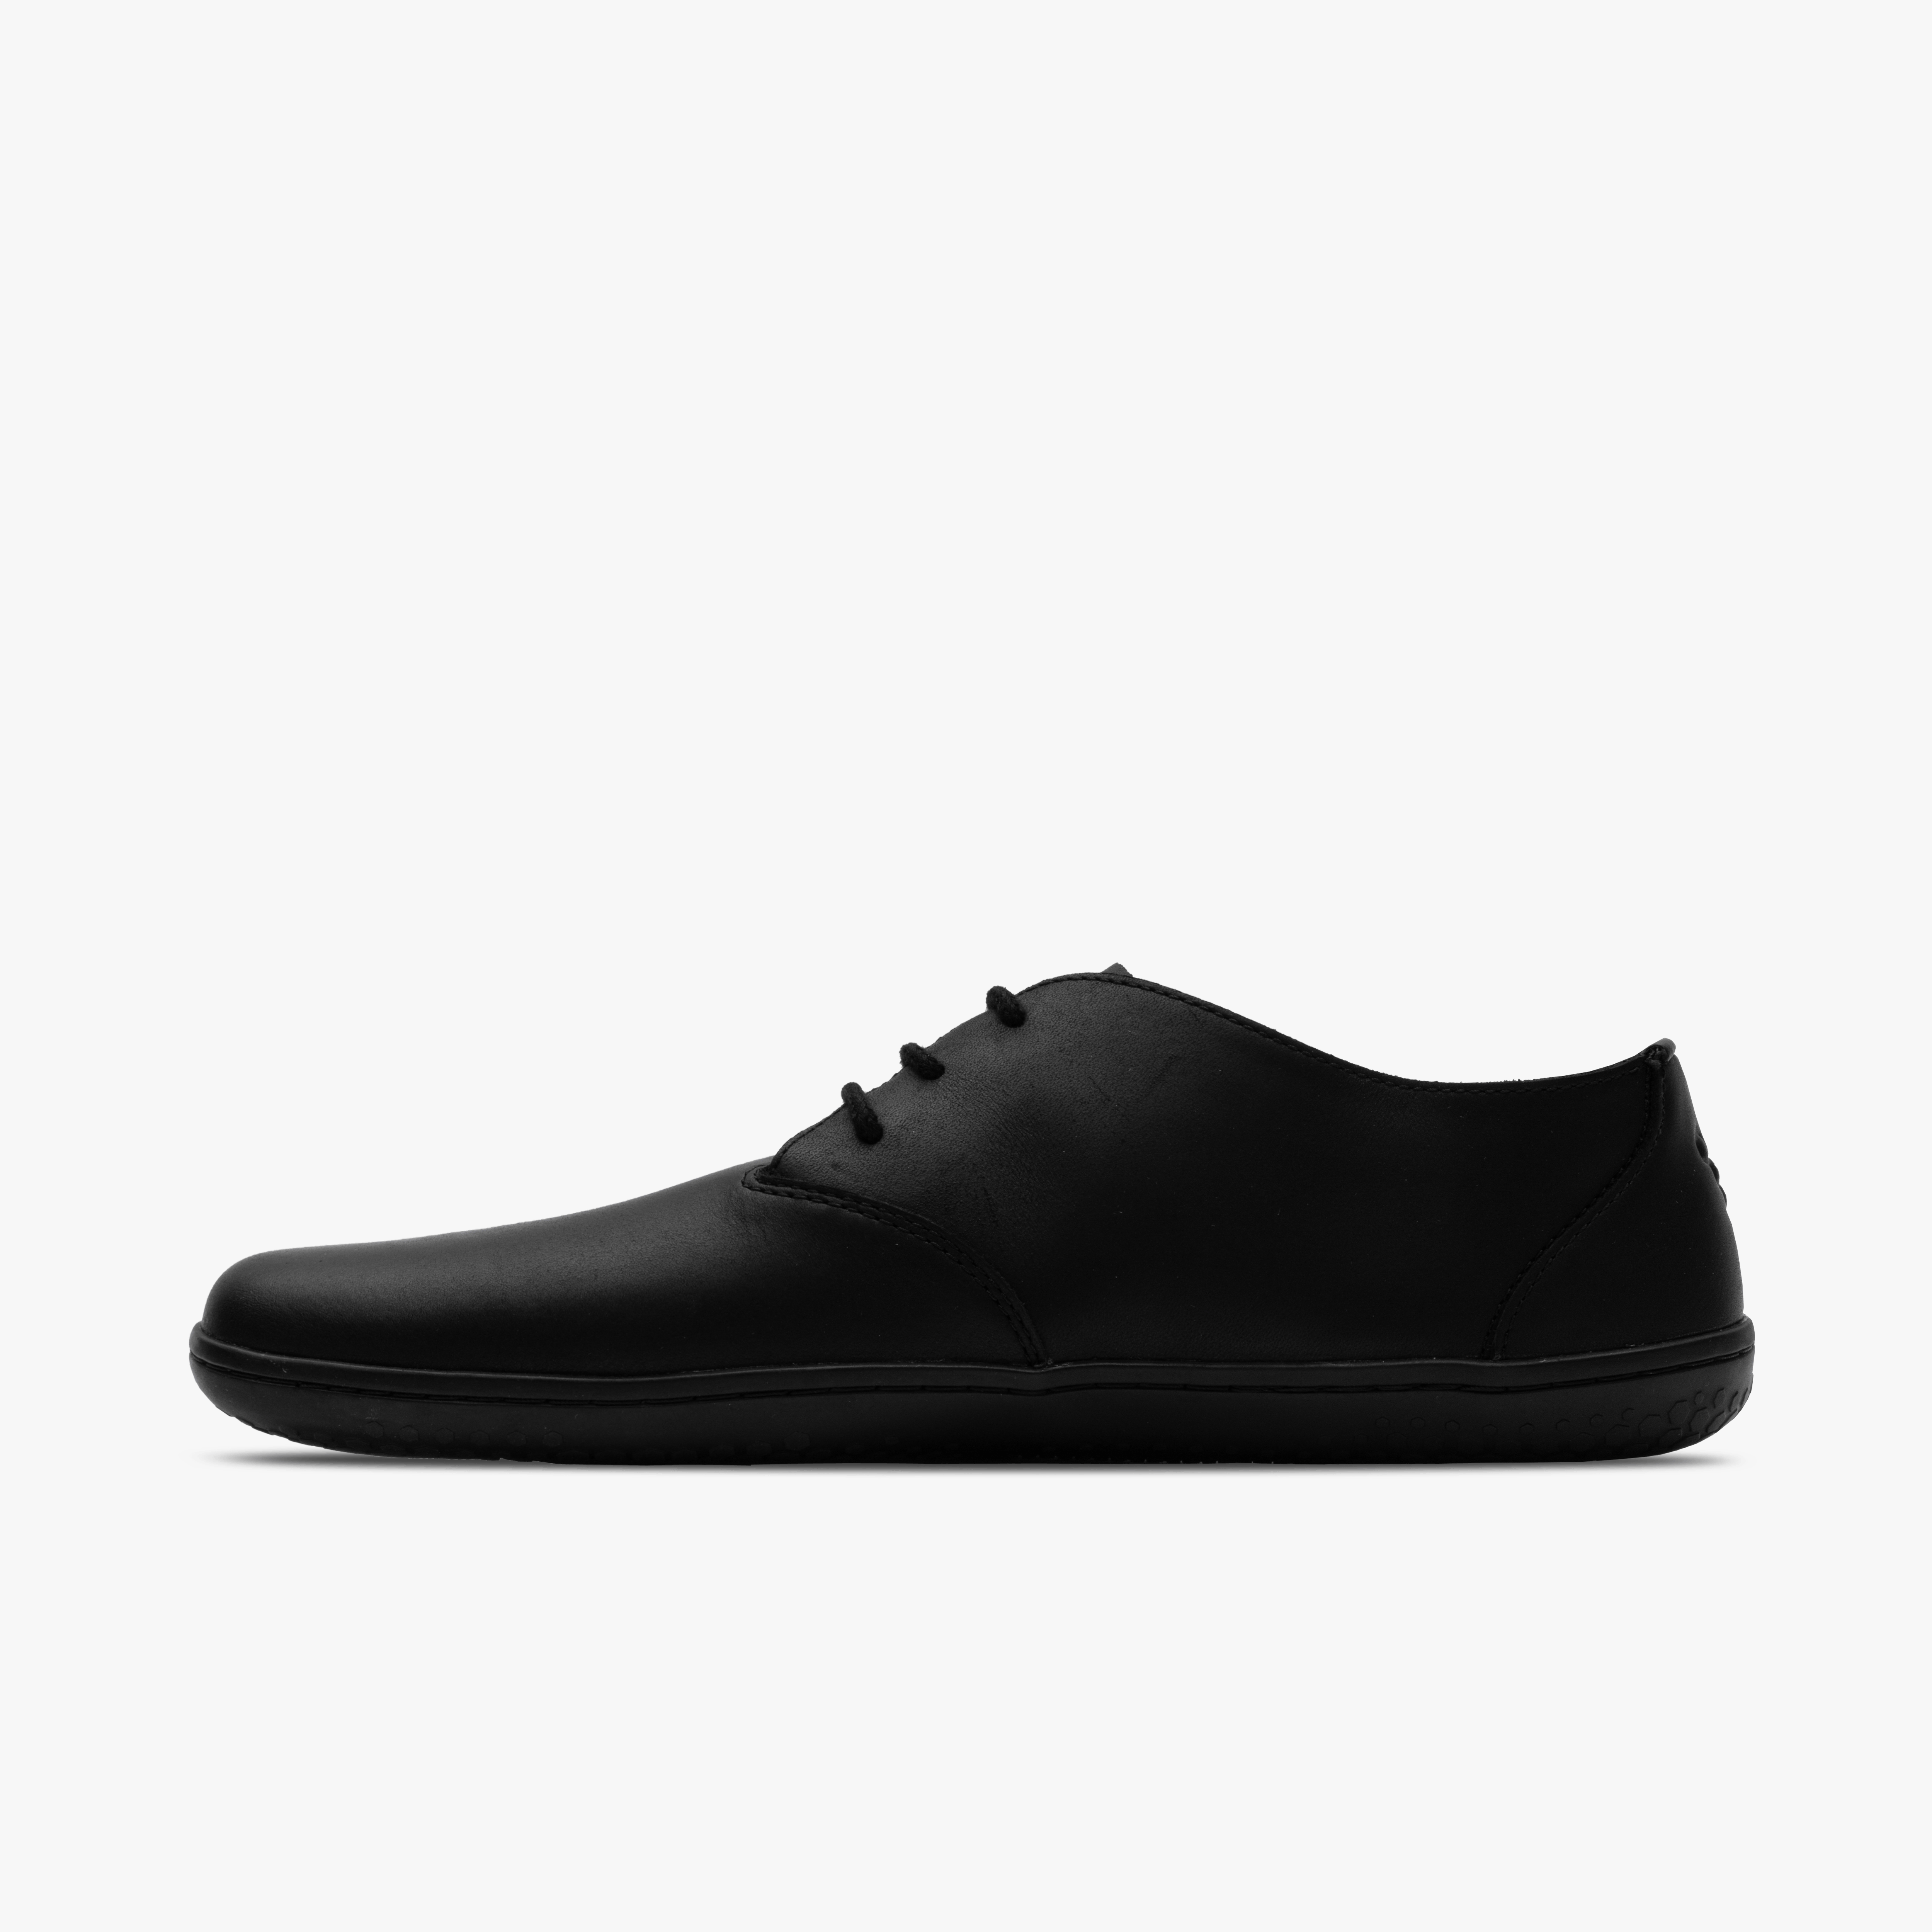 Ra IV fra Vivobarefoot i varianten Obsidian, herresko designet til barfodsgang. Skoene har et minimalistisk sort vildtlæderoverdel og en tynd, fleksibel sål for naturlig fodbevægelse.